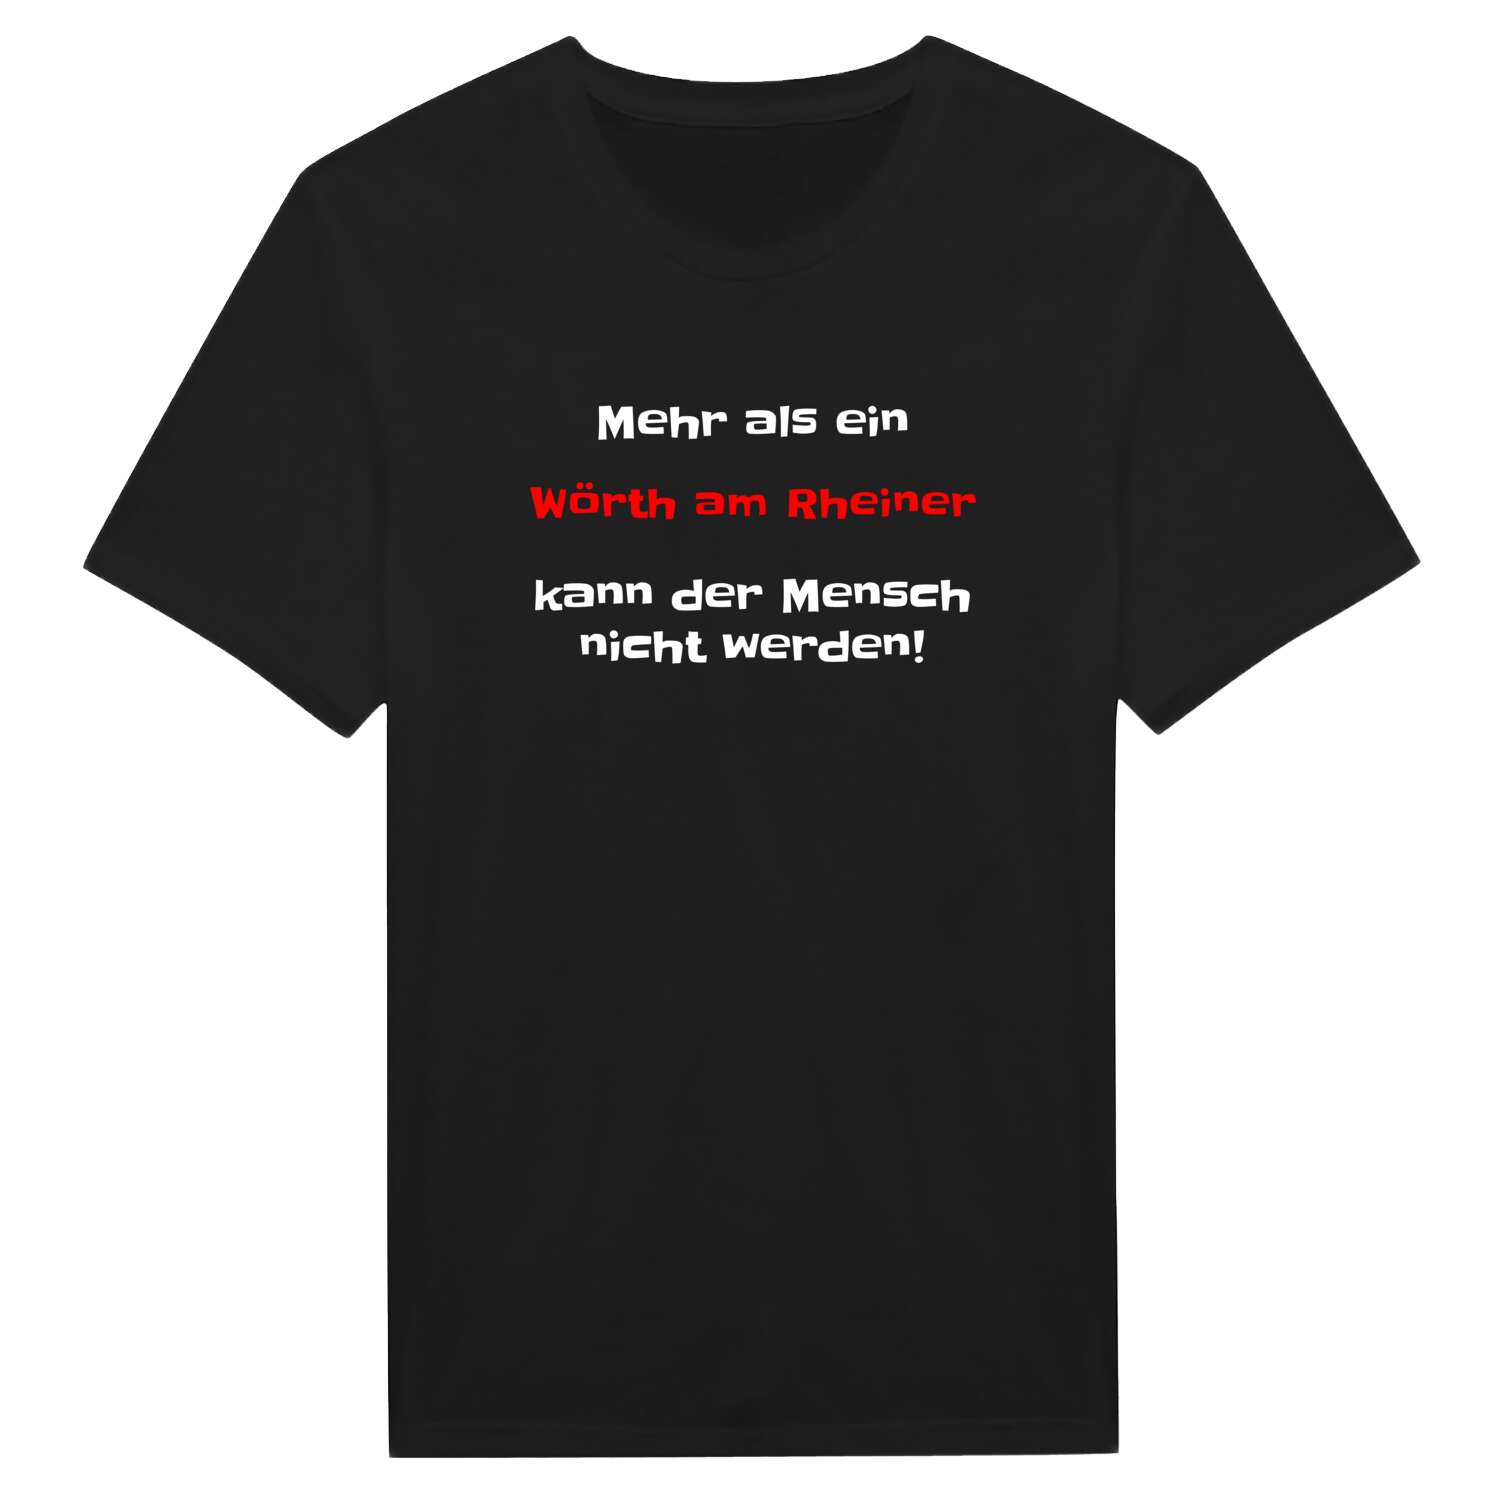 Wörth am Rhein T-Shirt »Mehr als ein«